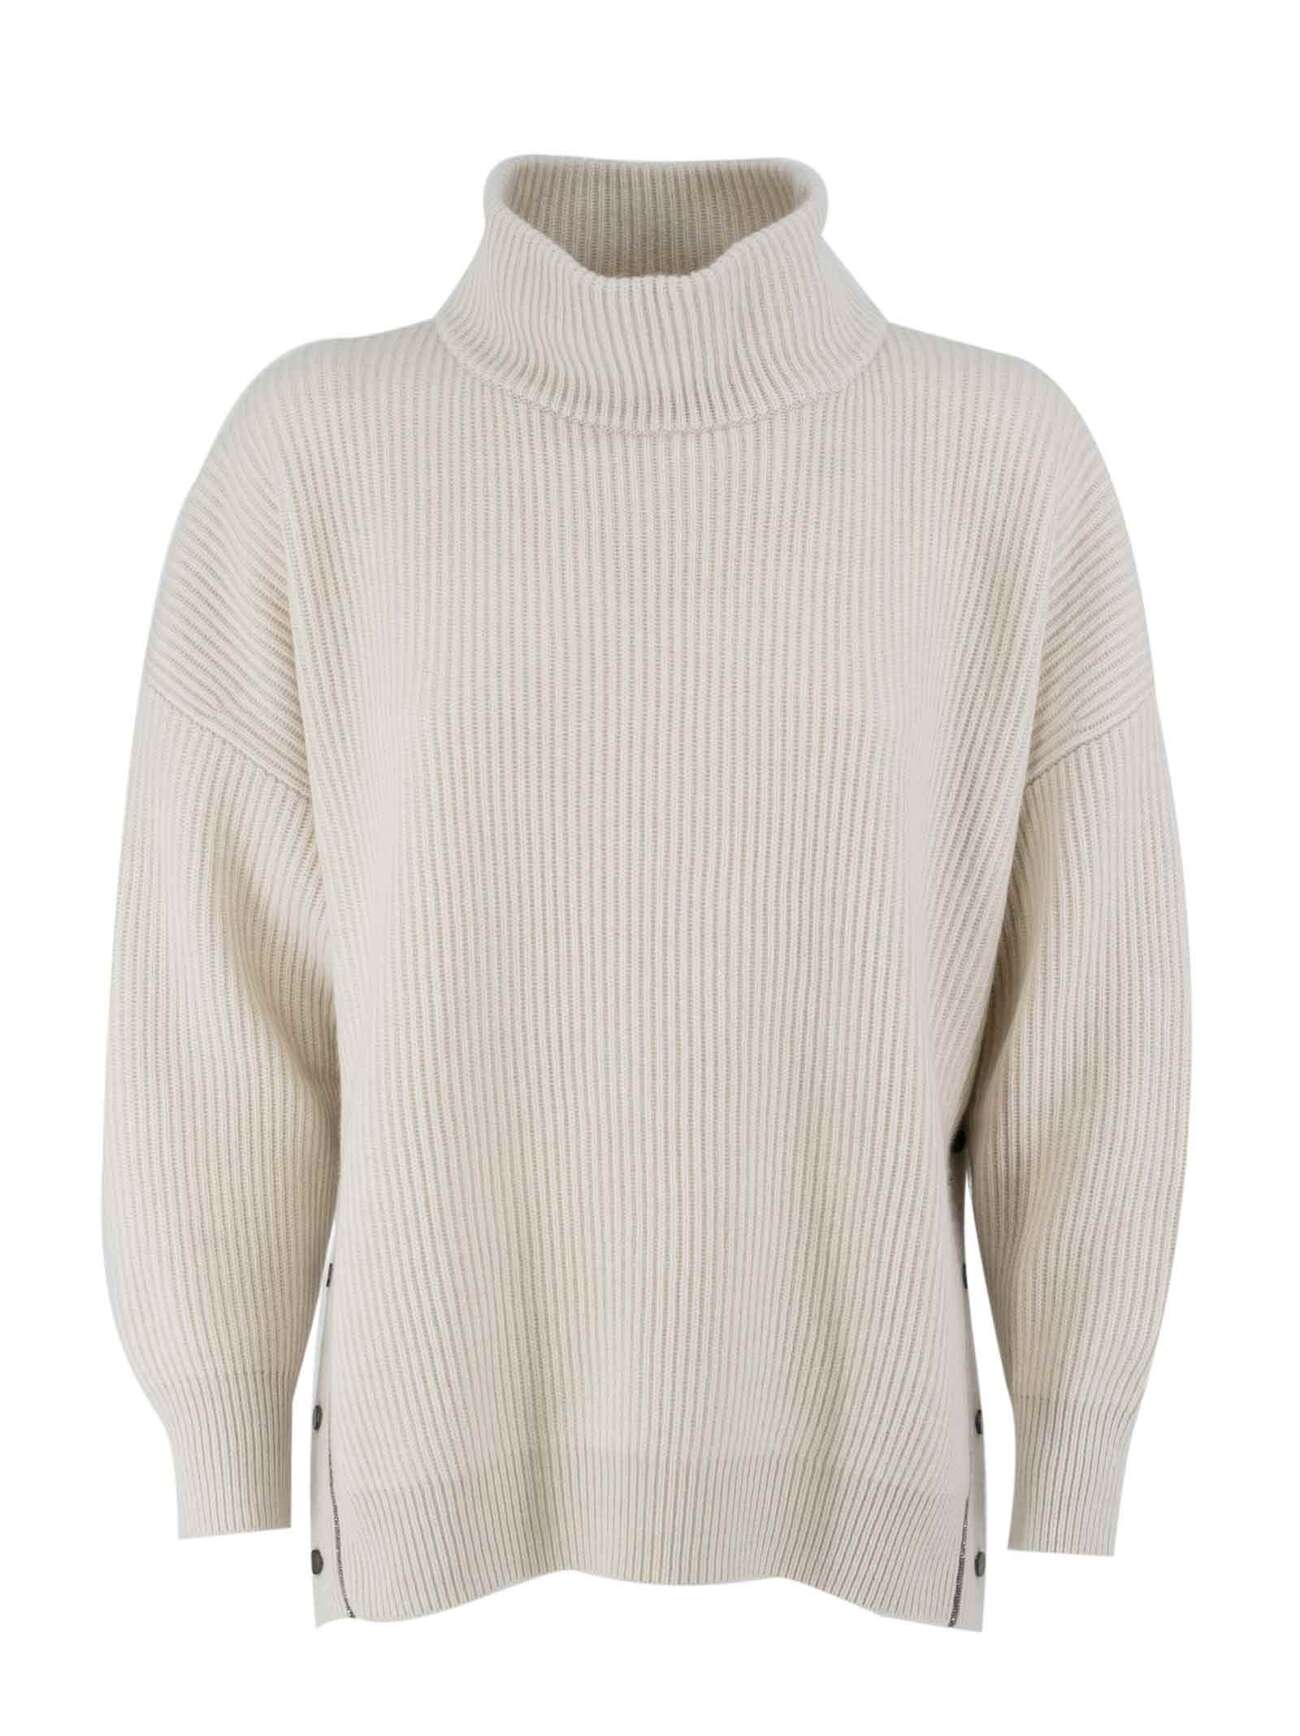 Brunello Cucinelli Cashmere Sweatshirt in white